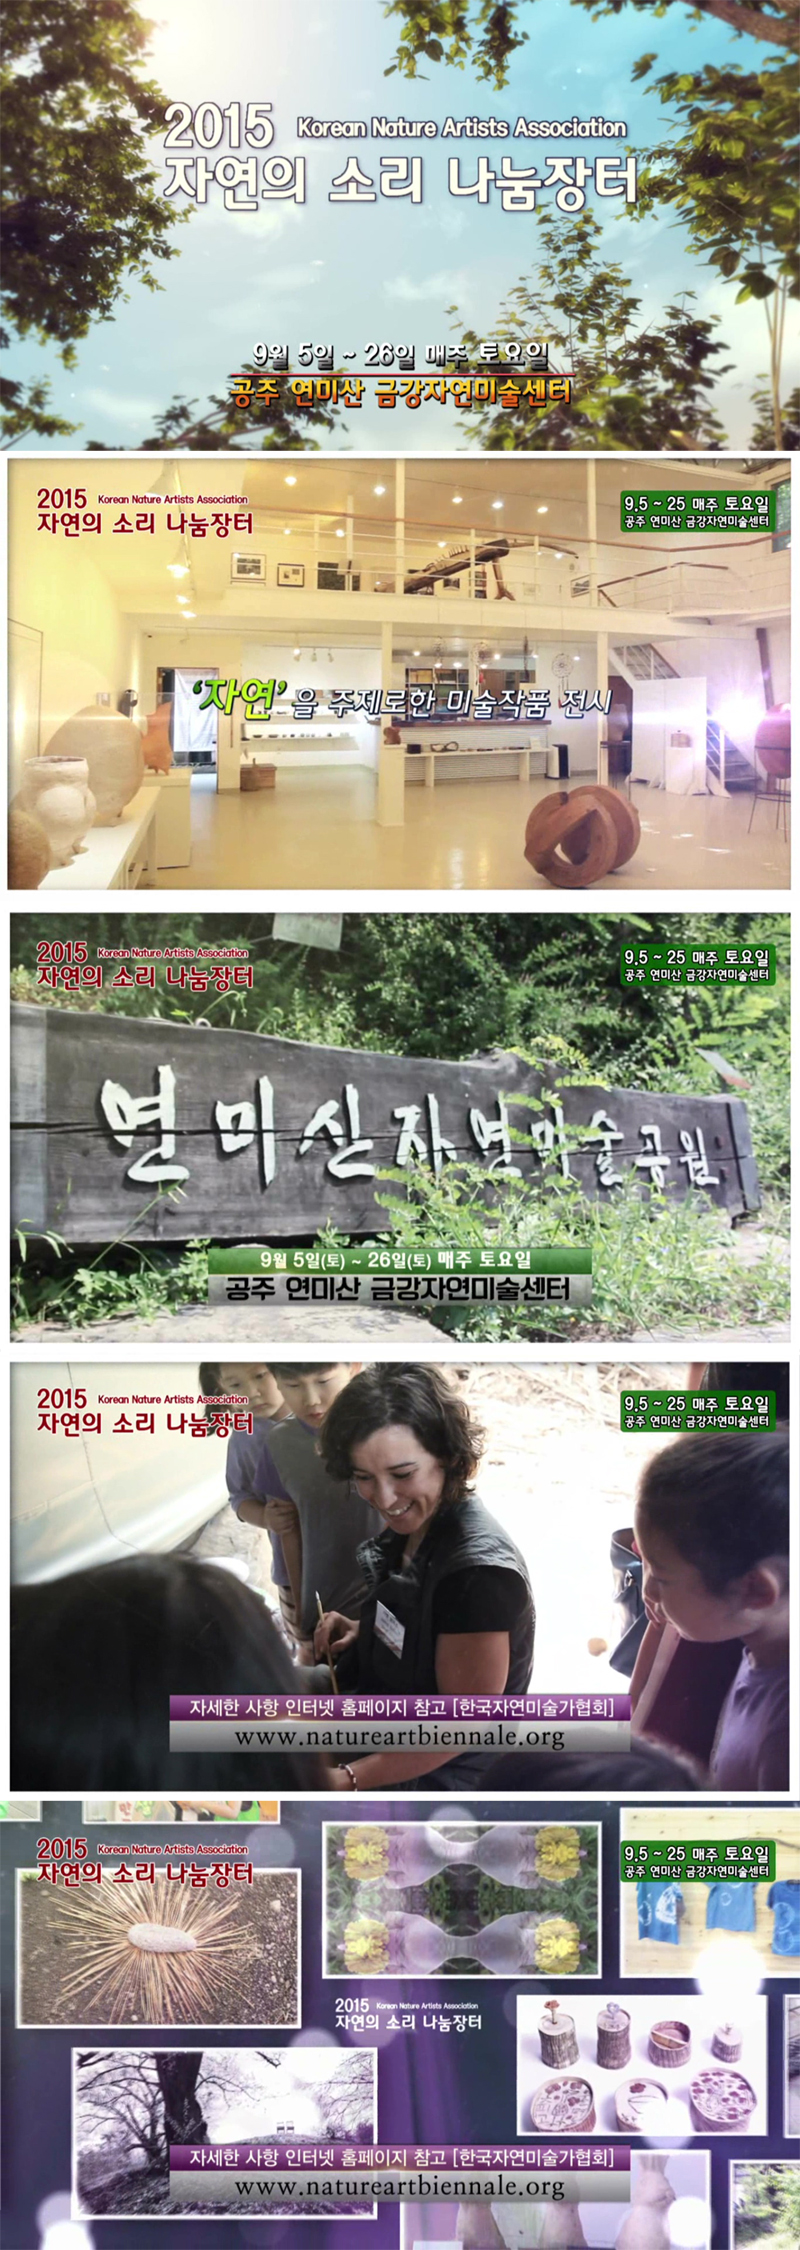 2015-08-30 대전 MBC 자연의소리 나눔장터 홍보영상.jpg